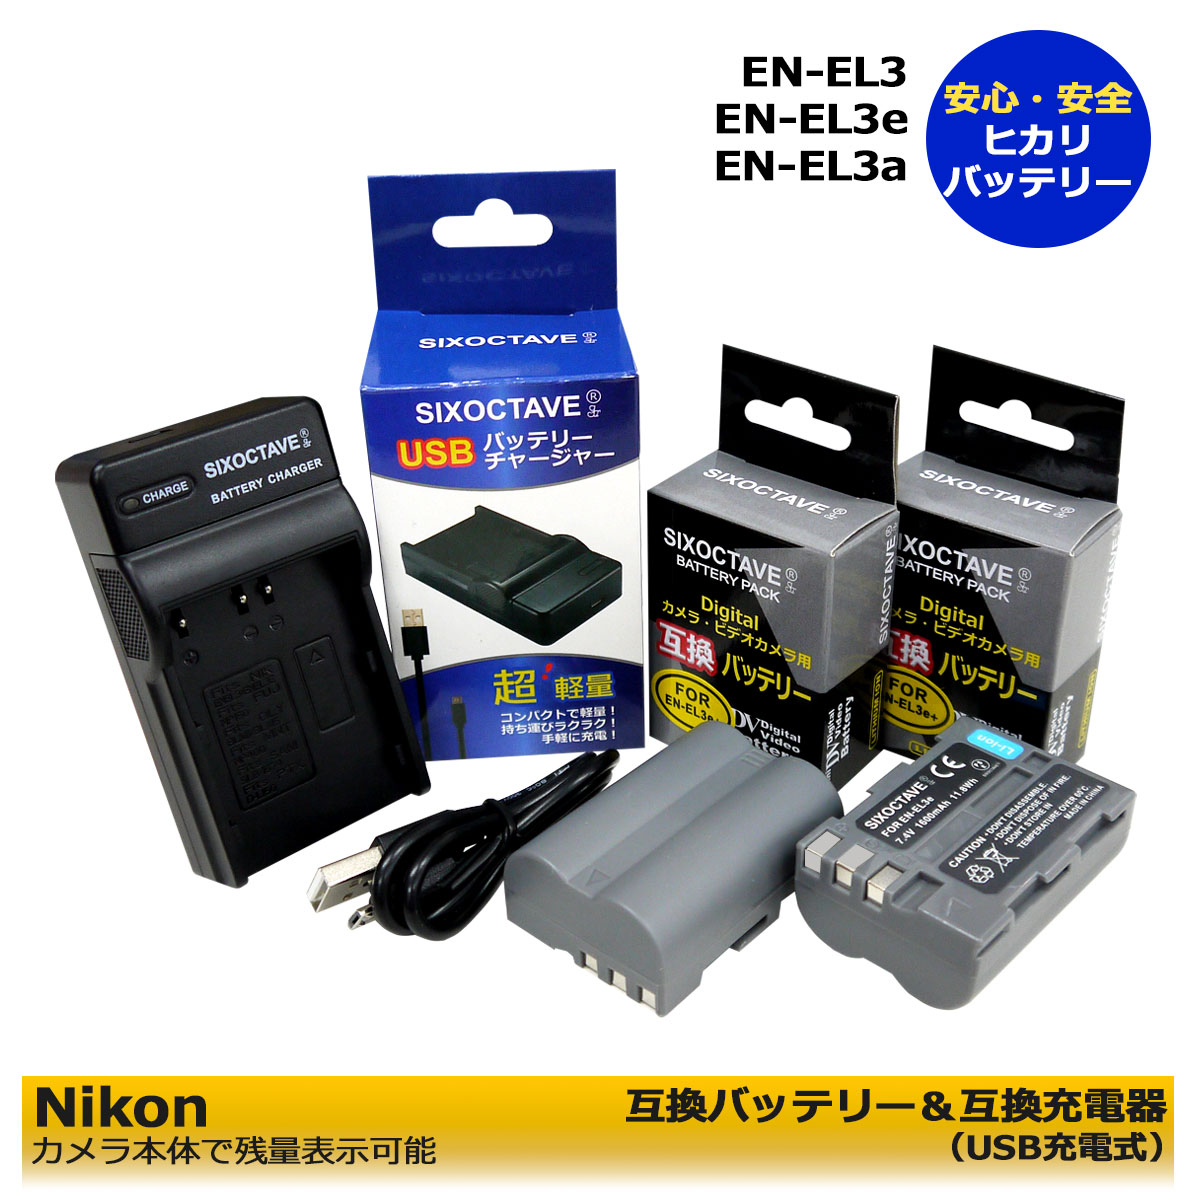 Nikon EN-EL3 / EN-EL3a / EN-EL3e 互換充電池 2個と 互換充電器 の 3個セット USB充電式 MH-18 純正バッテリーにも対応 D700 / D90 / D300 / D300s / D200 / D80 / D70 / D70s/ D50 / D100 / D100LS